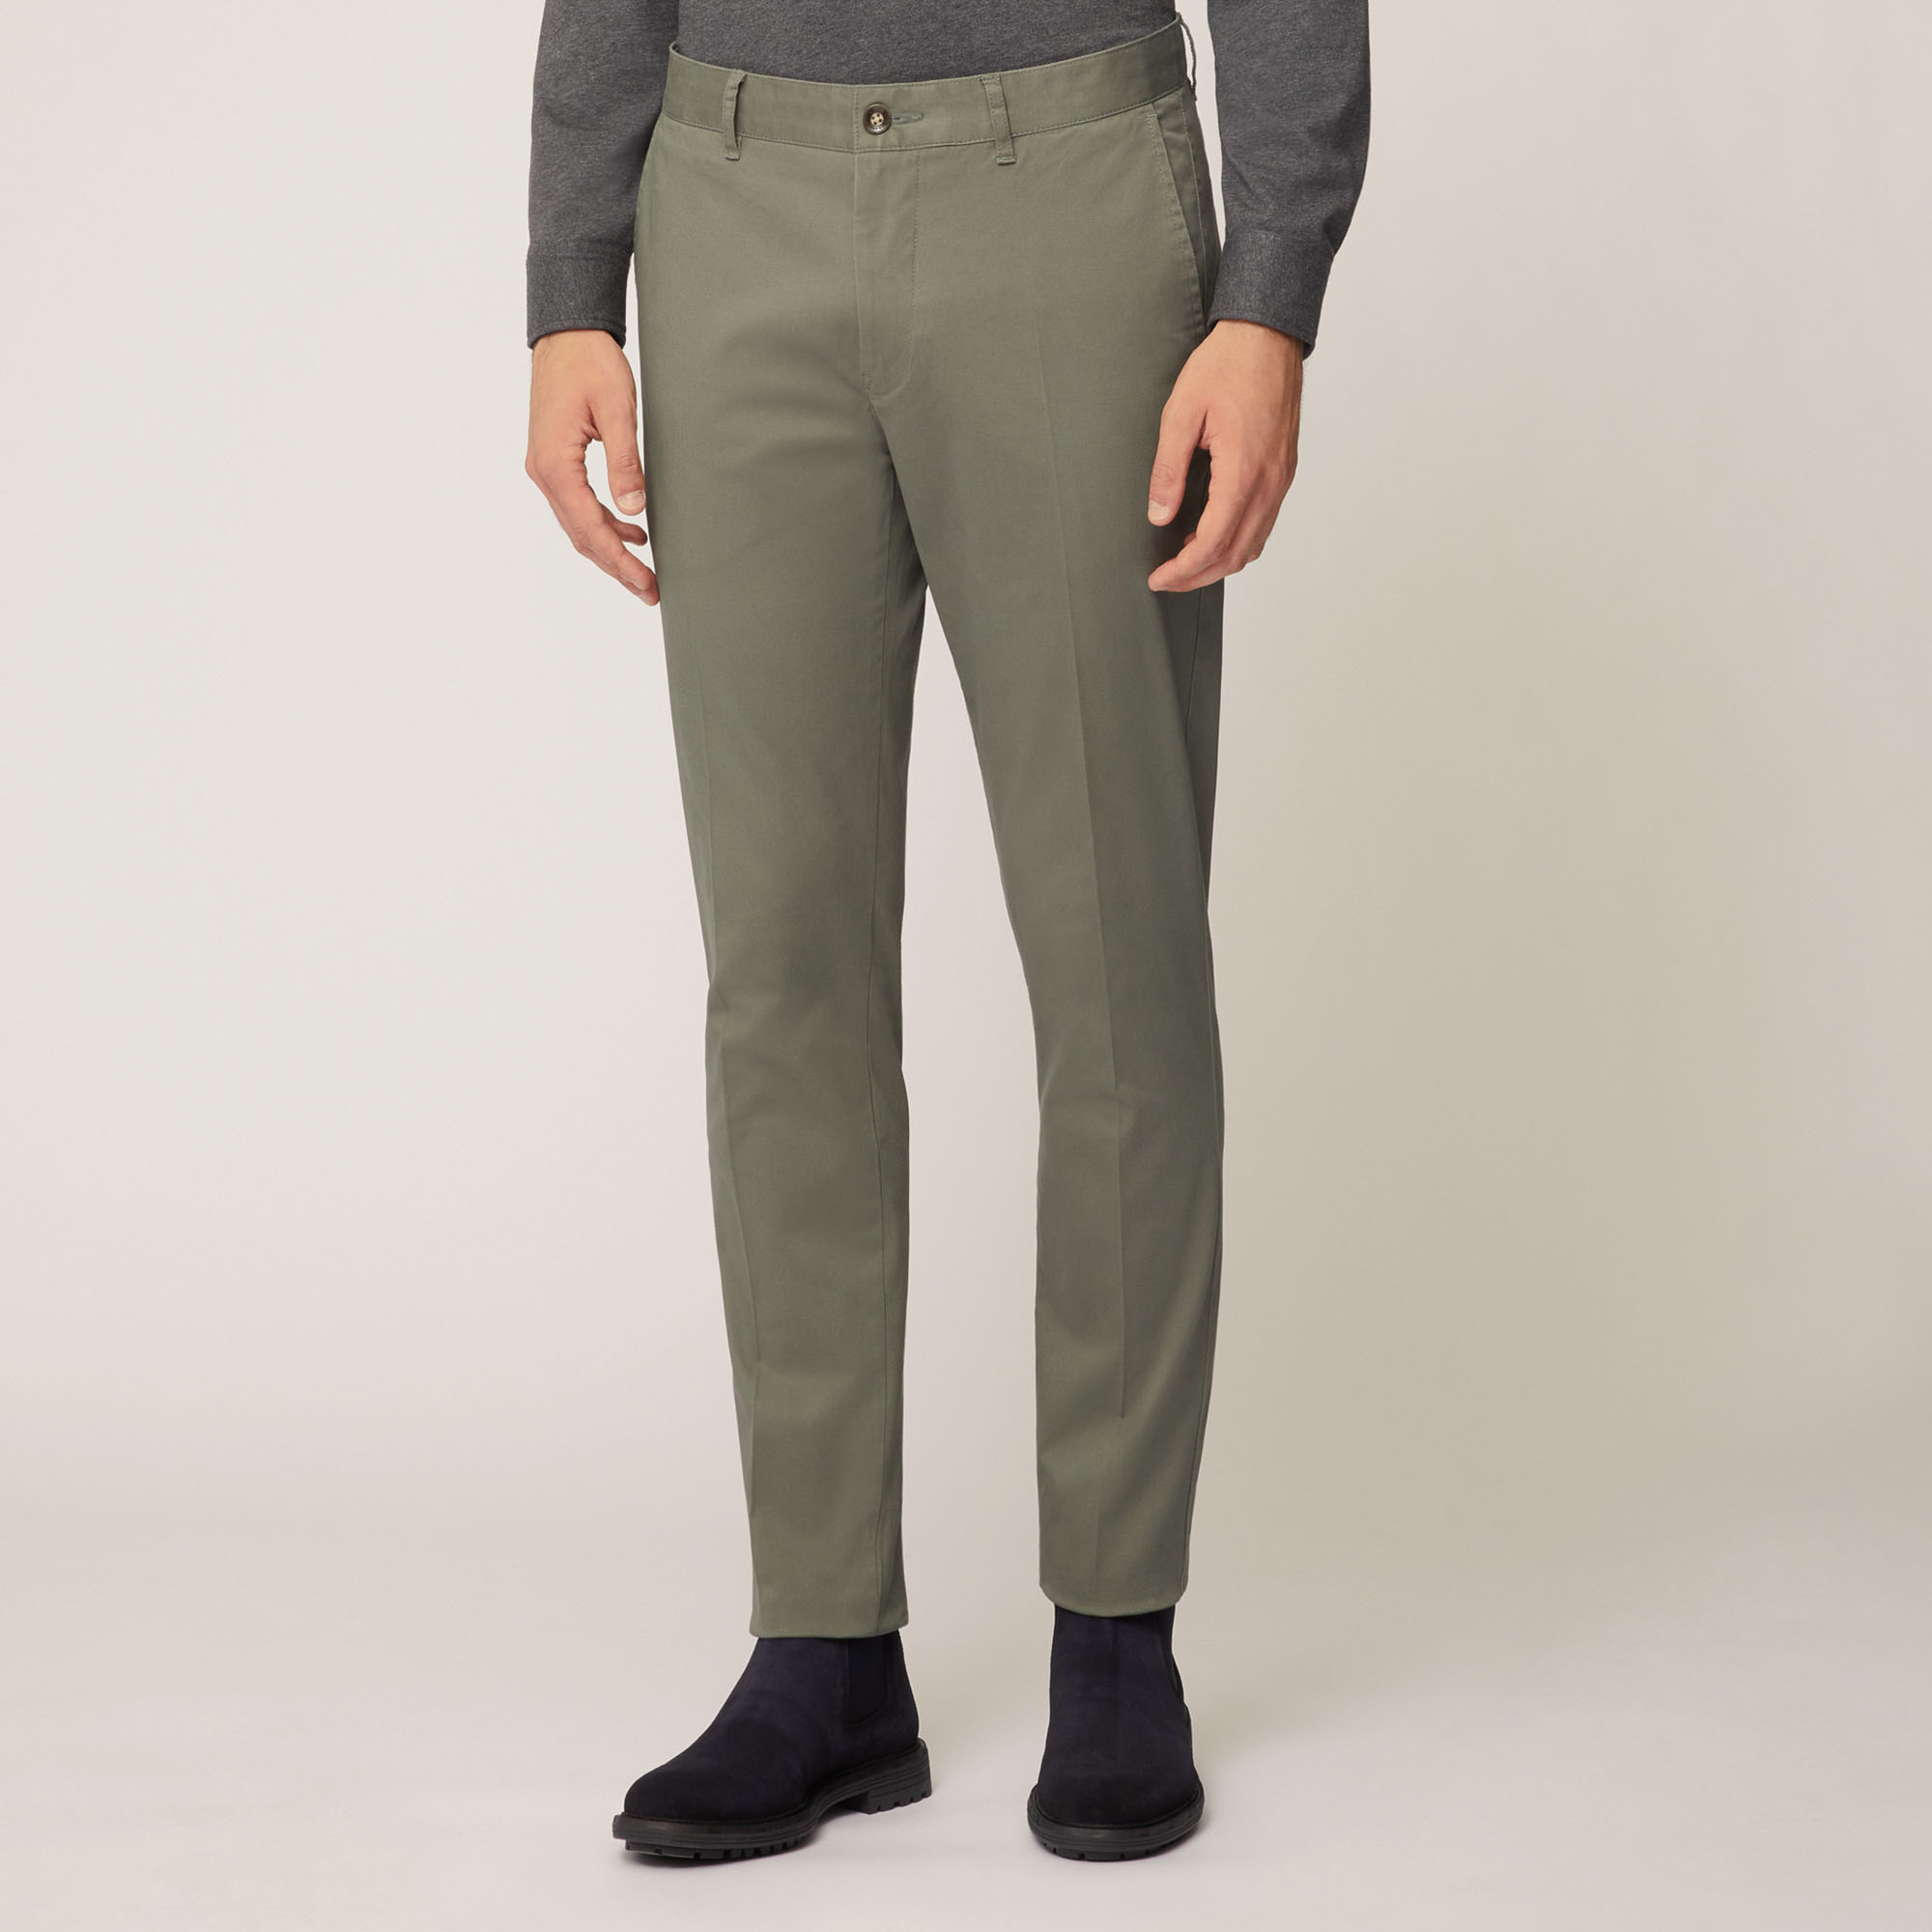 Pantalone Chino Narrow In Twill Leggero Di Cotone, Verde Petrolio, large